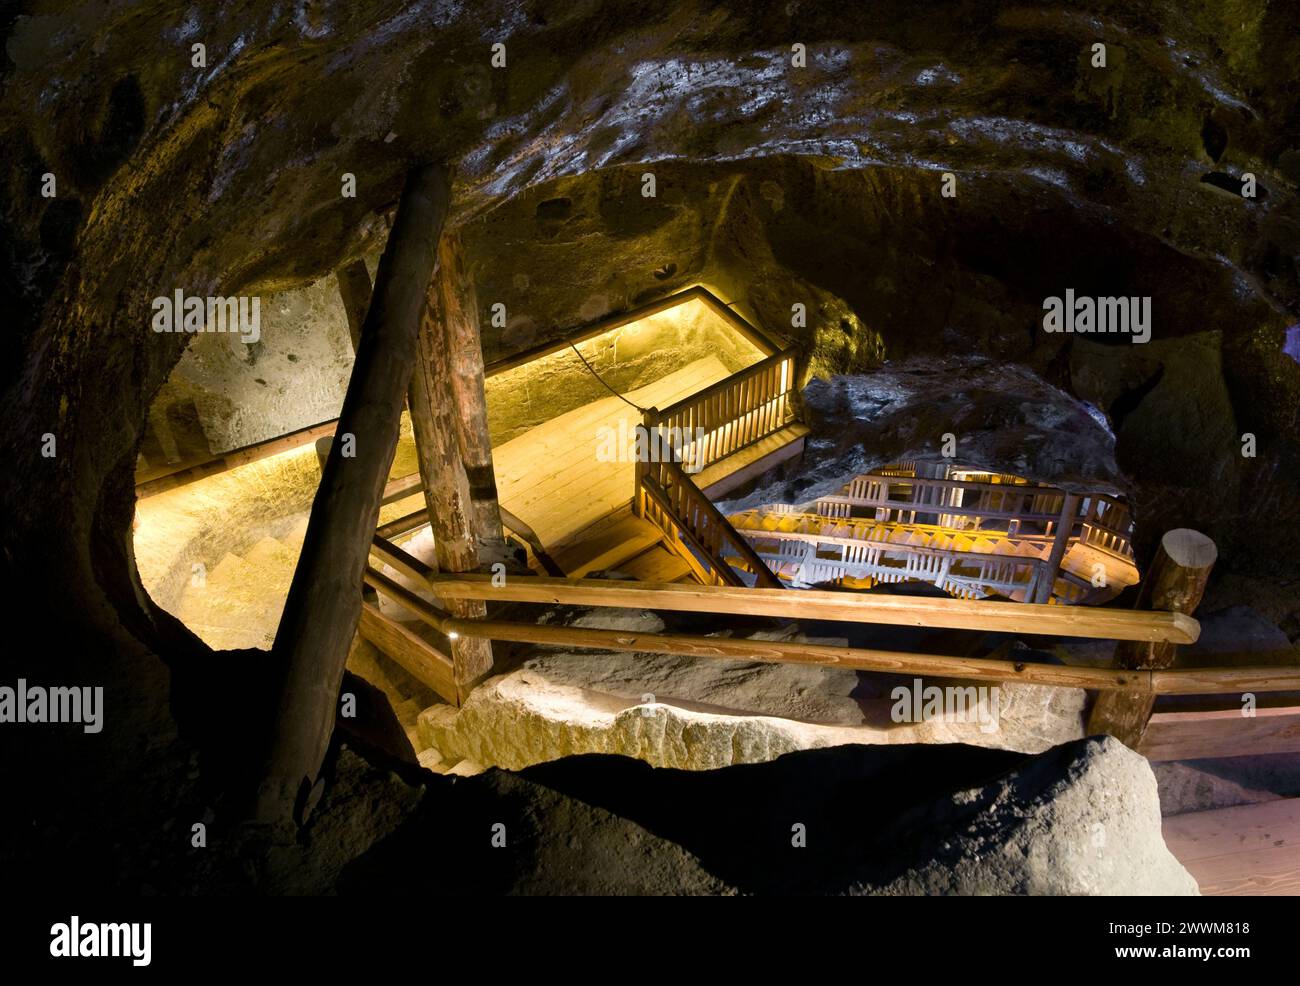 Wieliczka Salt Mine, Wieliczka, Poland Stock Photo